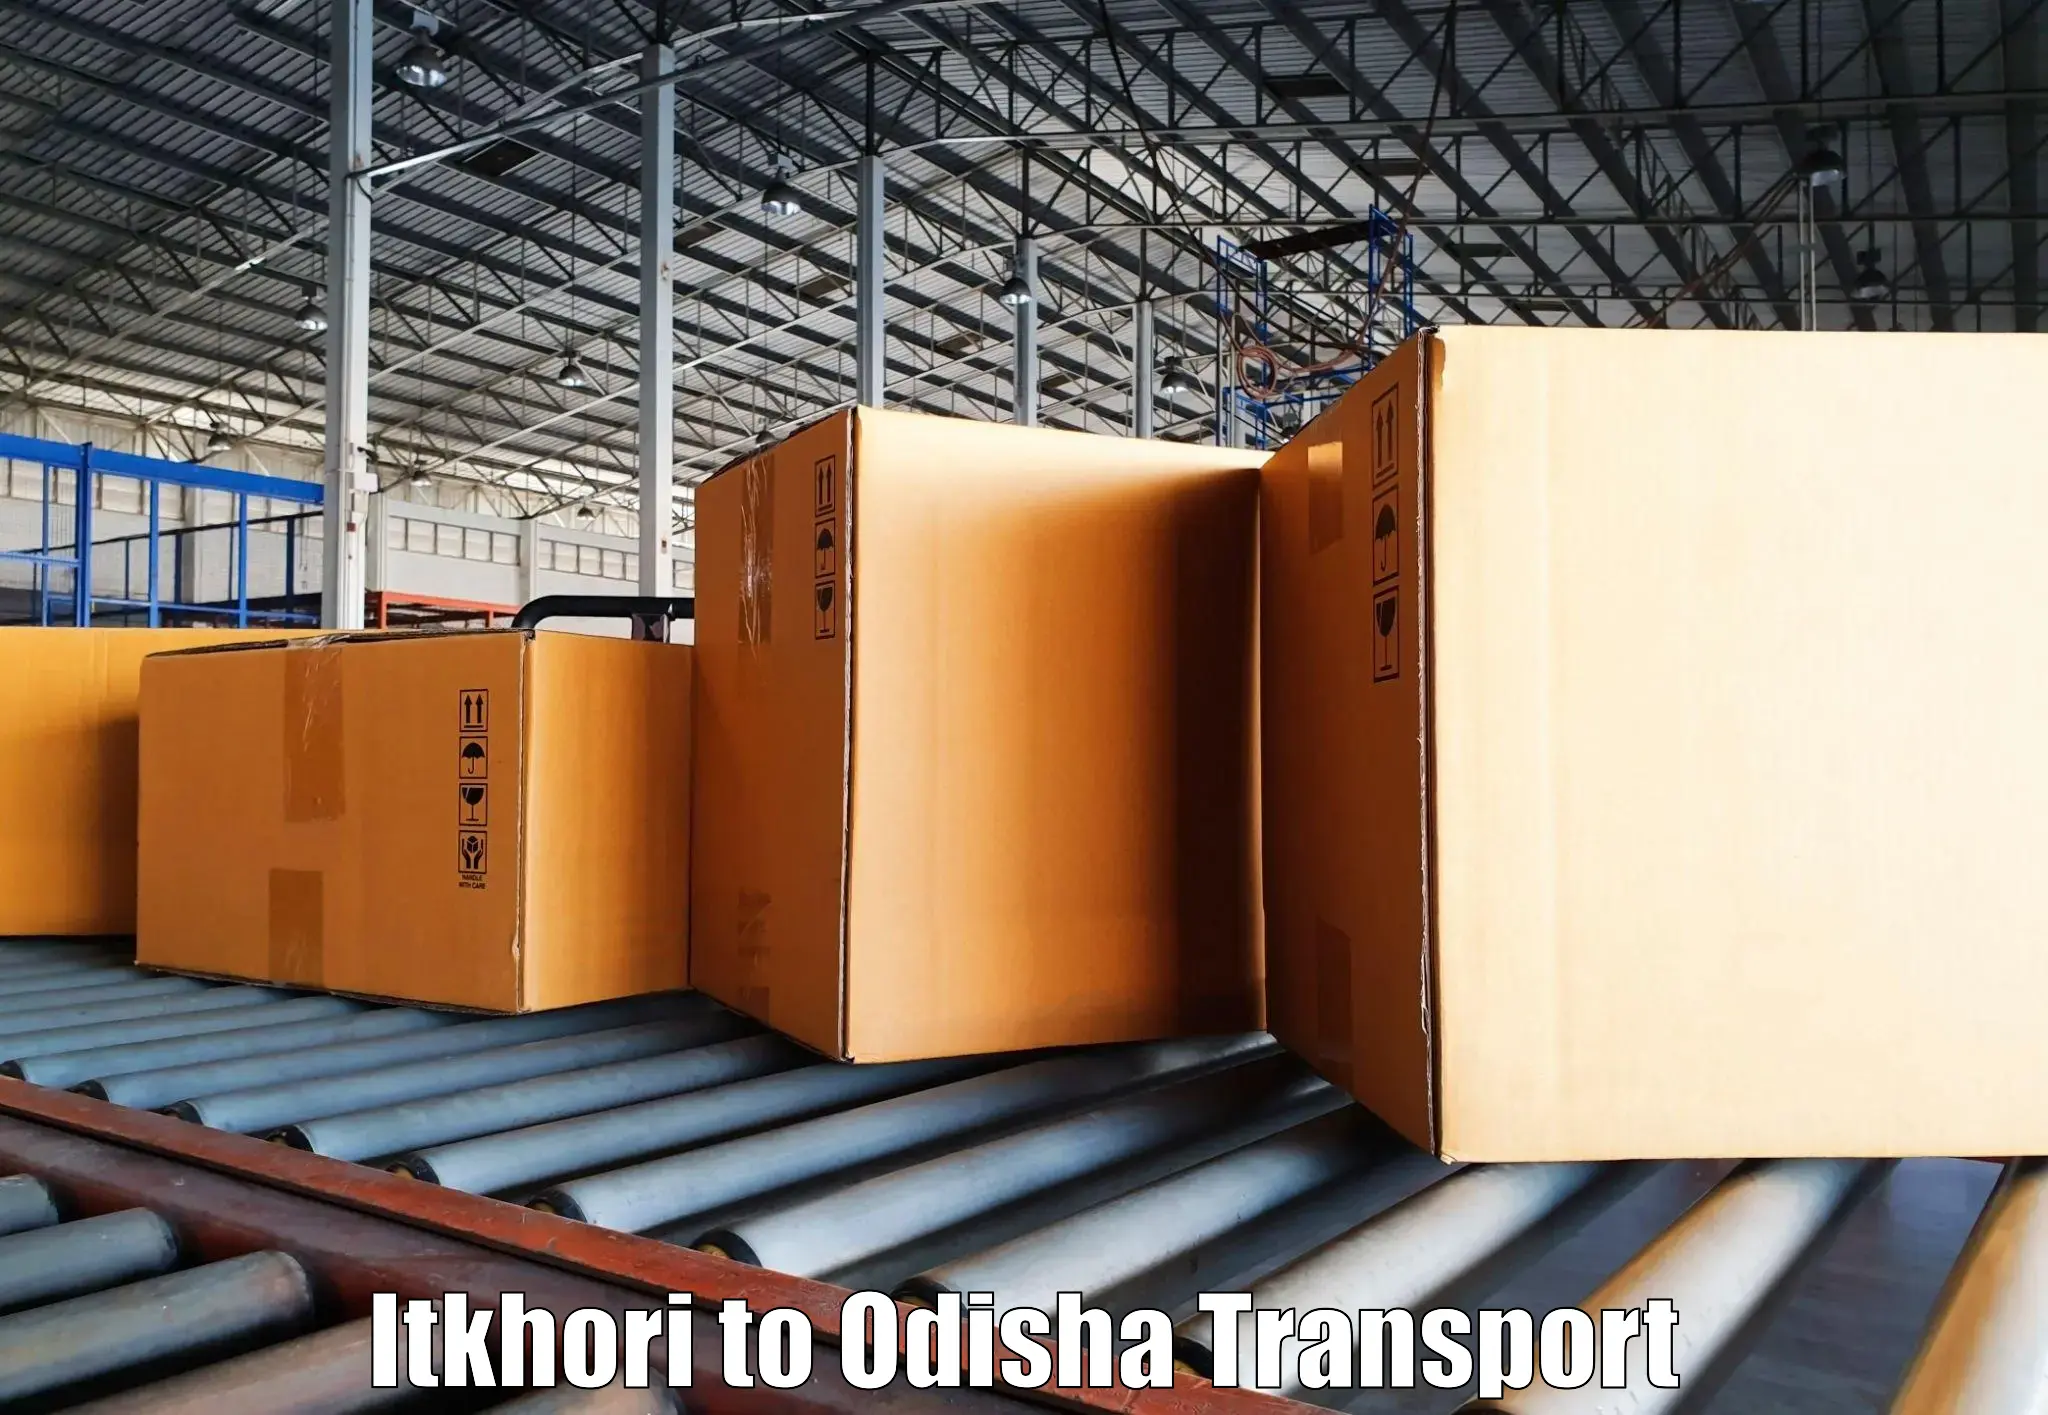 Furniture transport service Itkhori to Asika